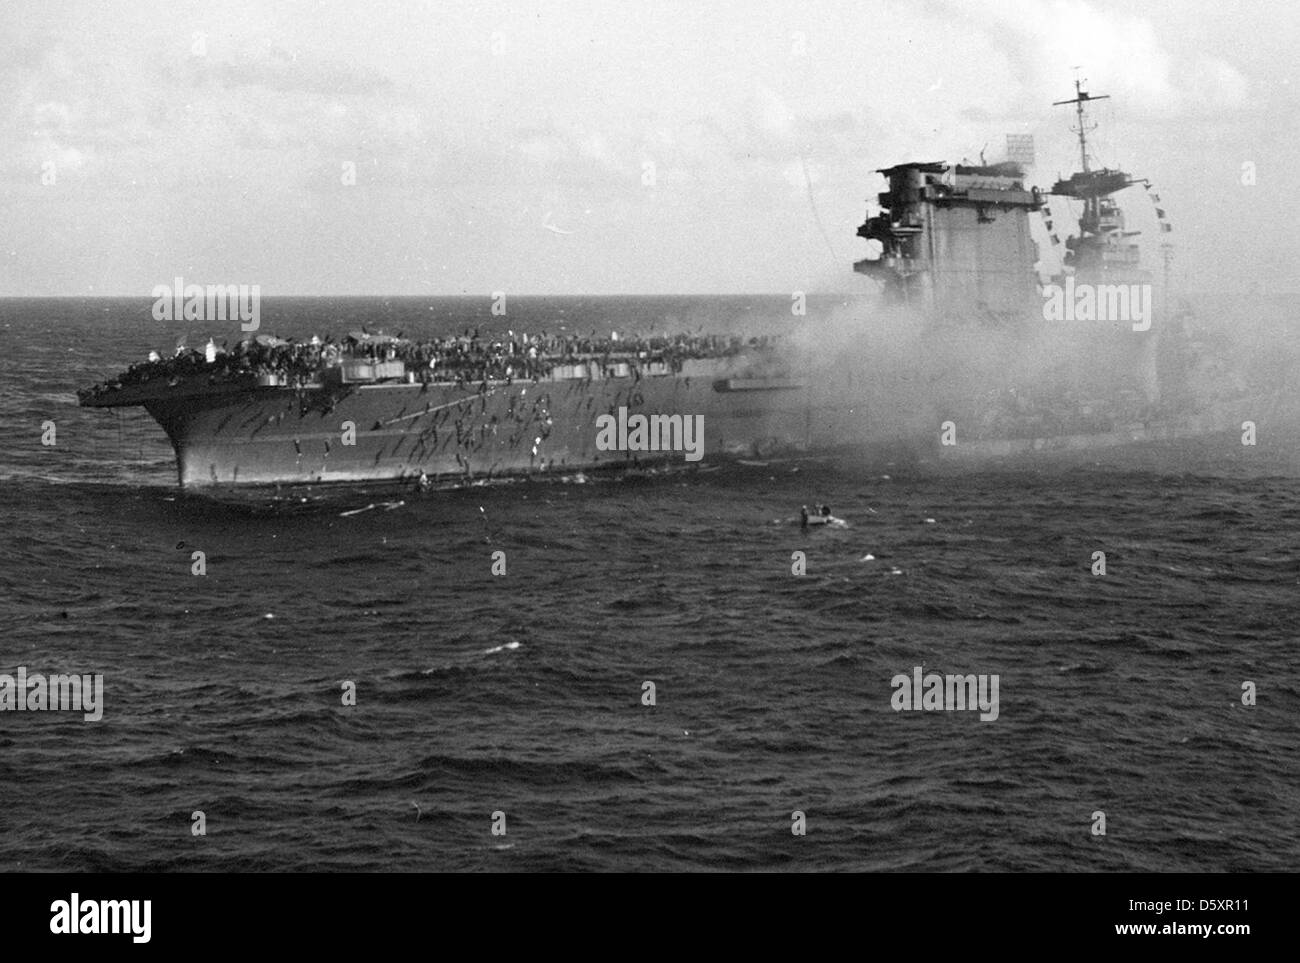 Abandonner le navire de l'équipage à bord de l'uss lexington (CV-2), après que le transporteur a été touché par des bombes et des torpilles japonaises durant la bataille de la mer de corail. Banque D'Images